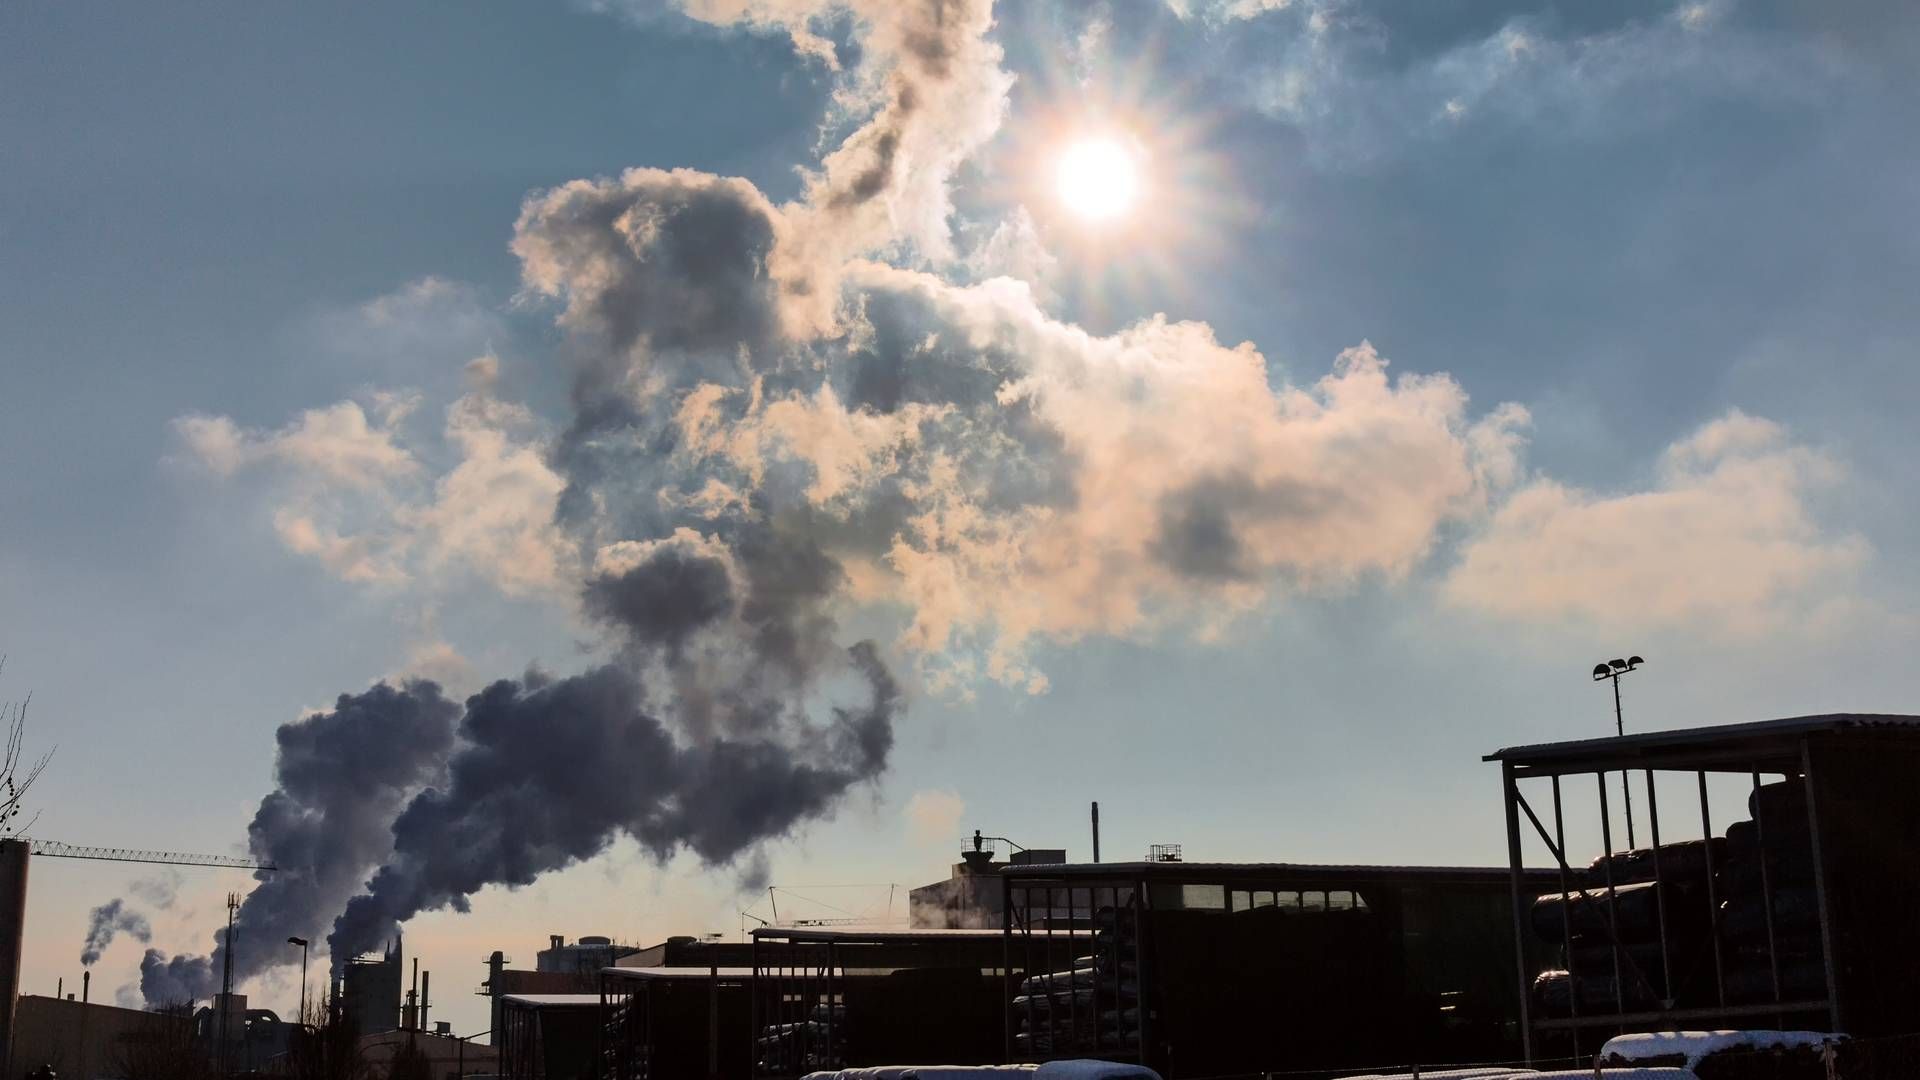 Finansielle virksomheder, der har sat CO2-reduktionsmål for porteføljen, risikerer at blive ramt af EU-lovgivningens mest vidtgående krav for bæredygtighed. | Foto: colourbox.com